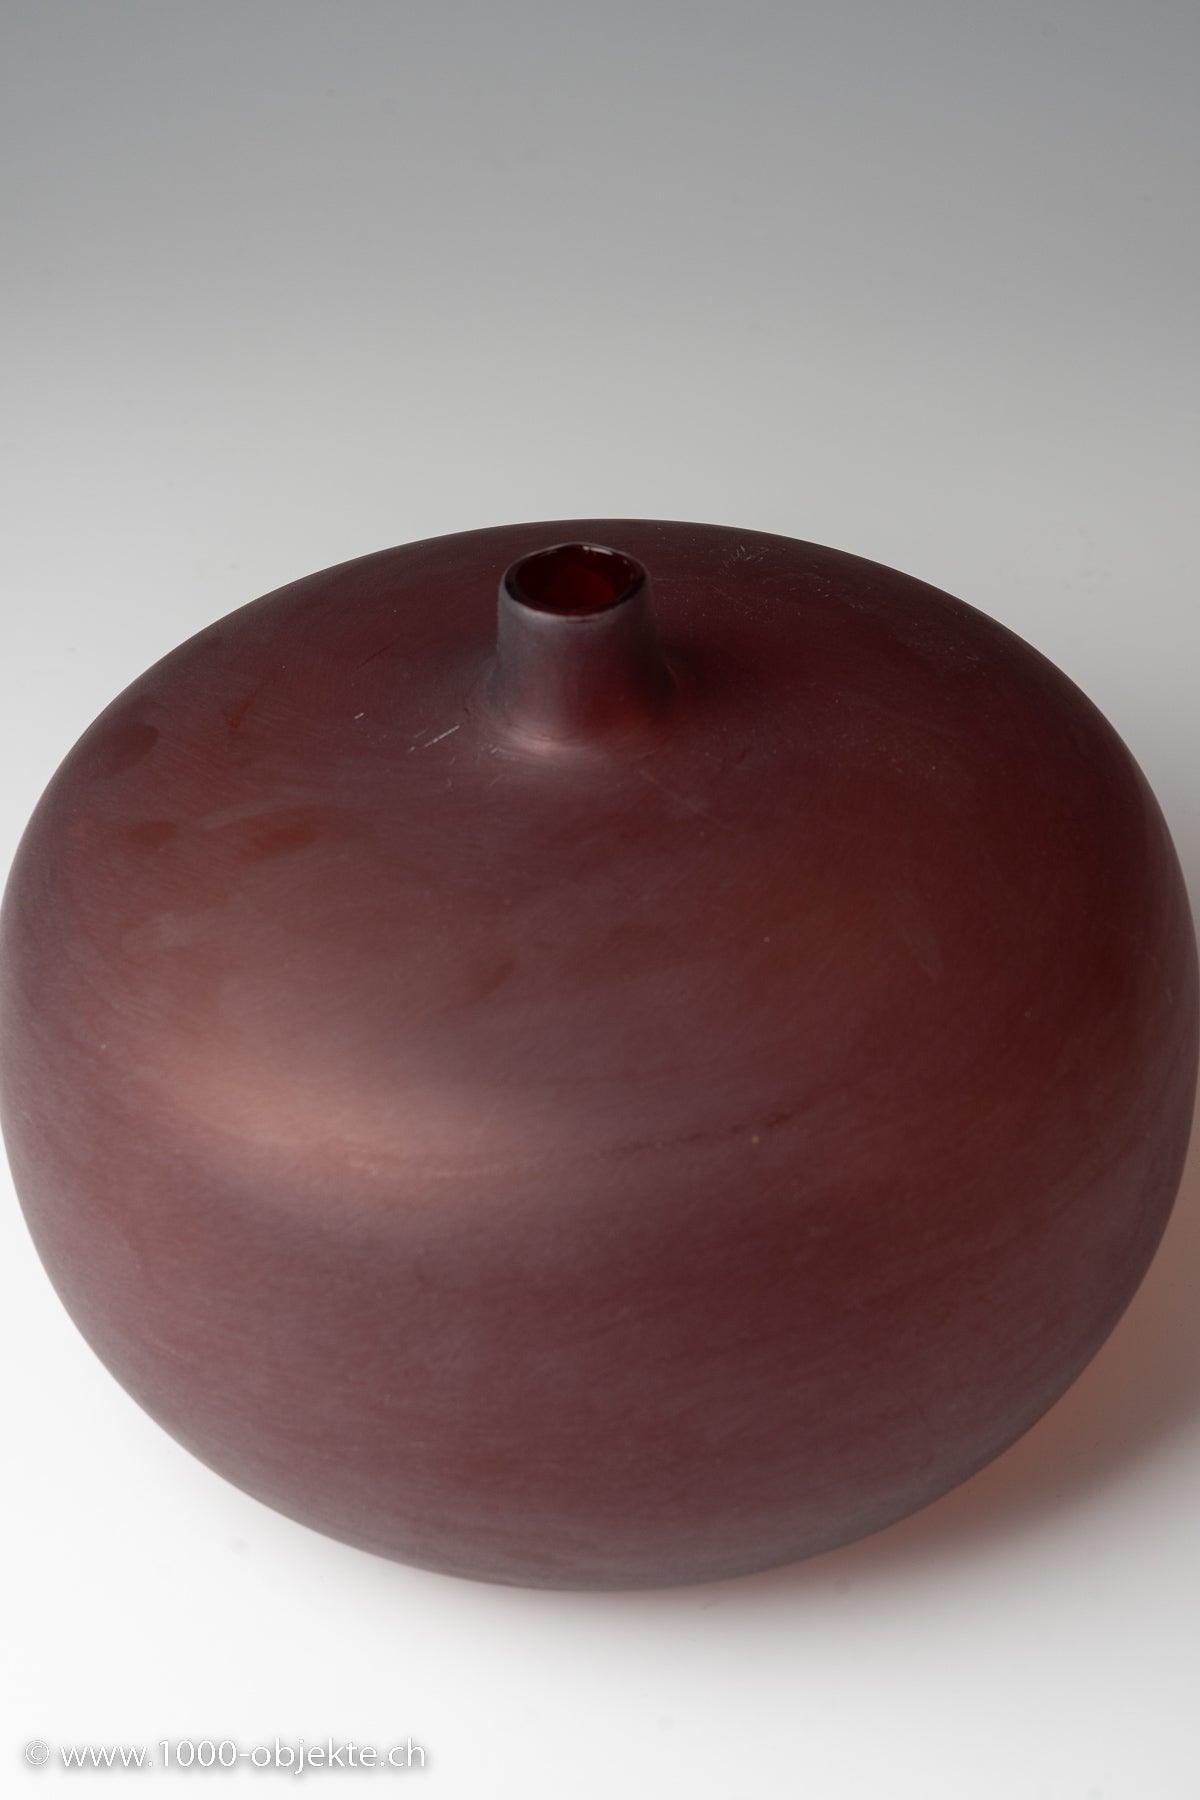 Tobia Scarpa, Velati vase, model #515.2 by Venini - 1000 Objekte